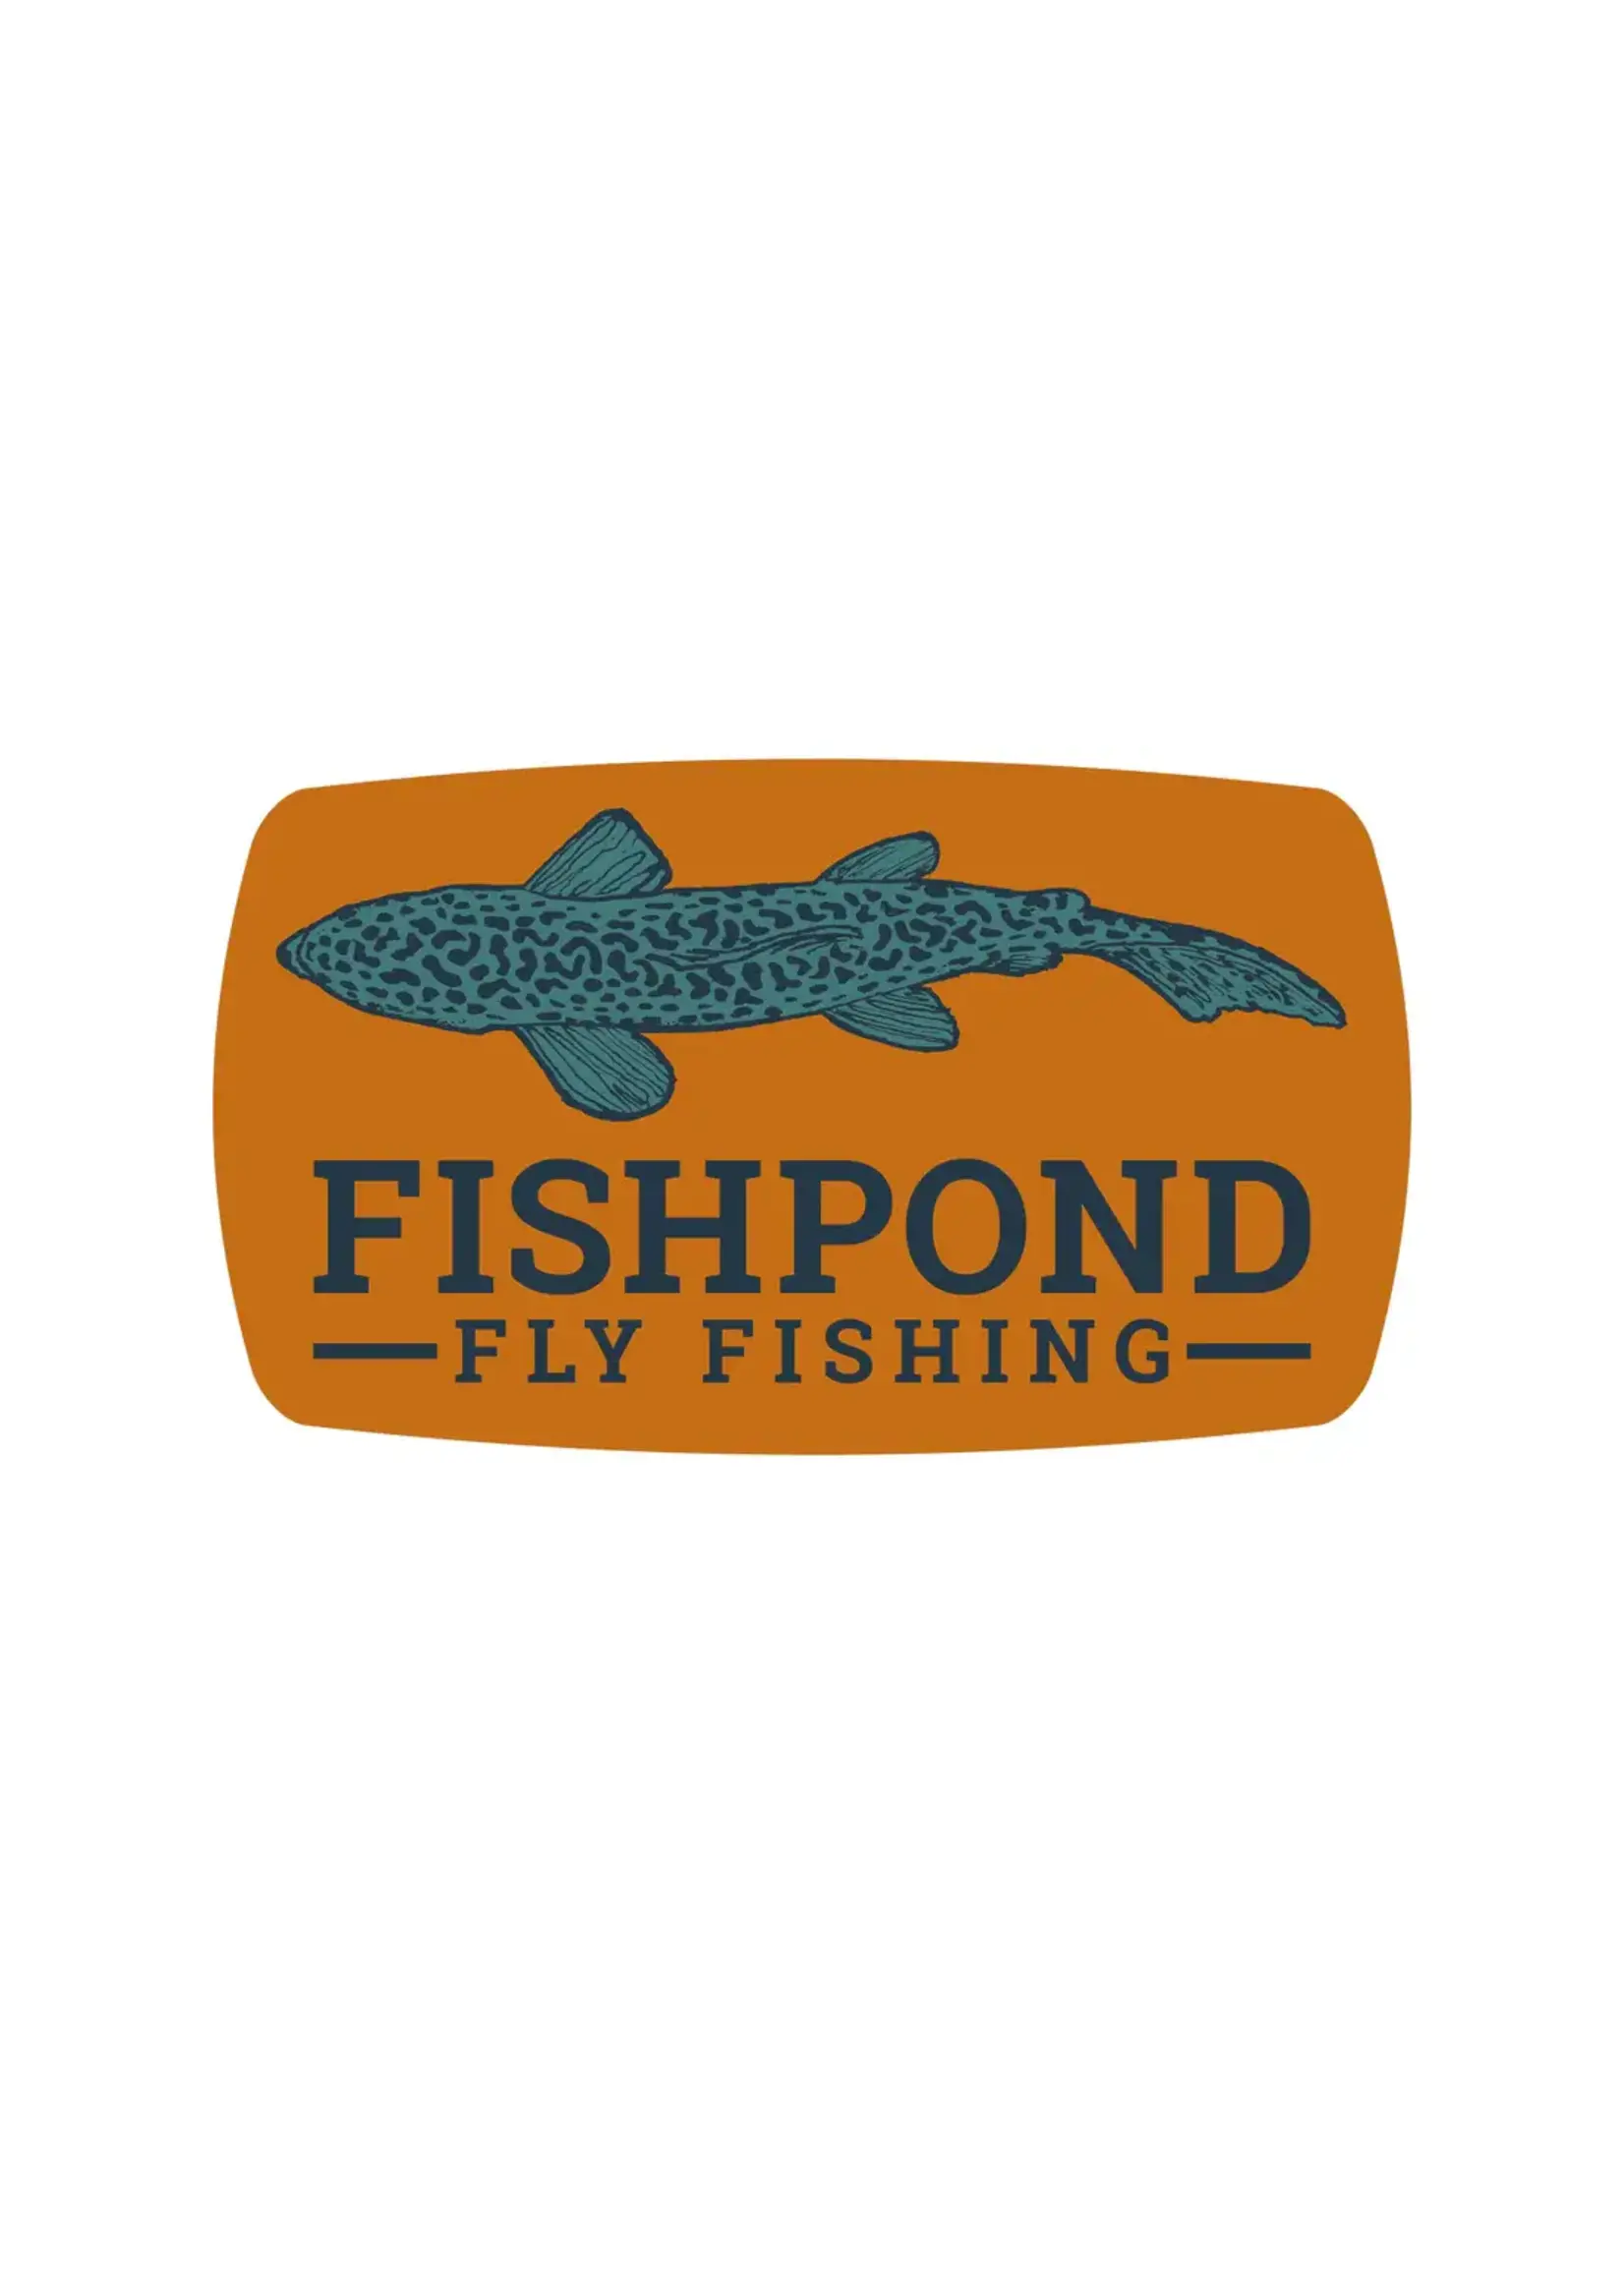 Fishpond Fishpond Cruiser Sticker